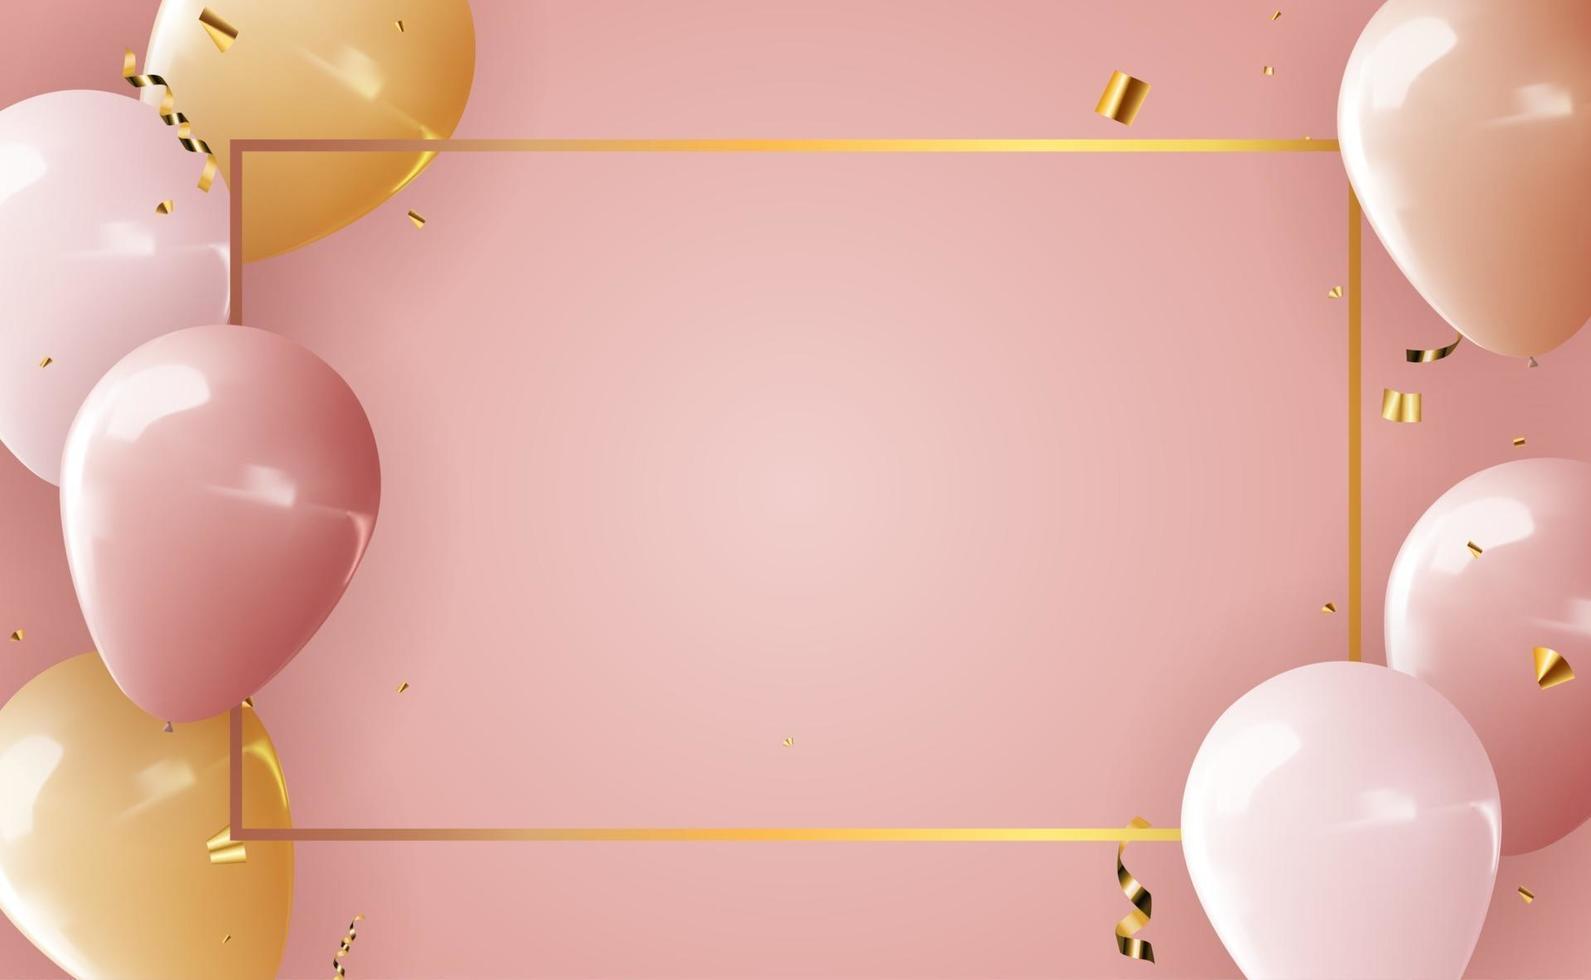 realistischer 3d Ballon für Partyfeiertagshintergrund vektor